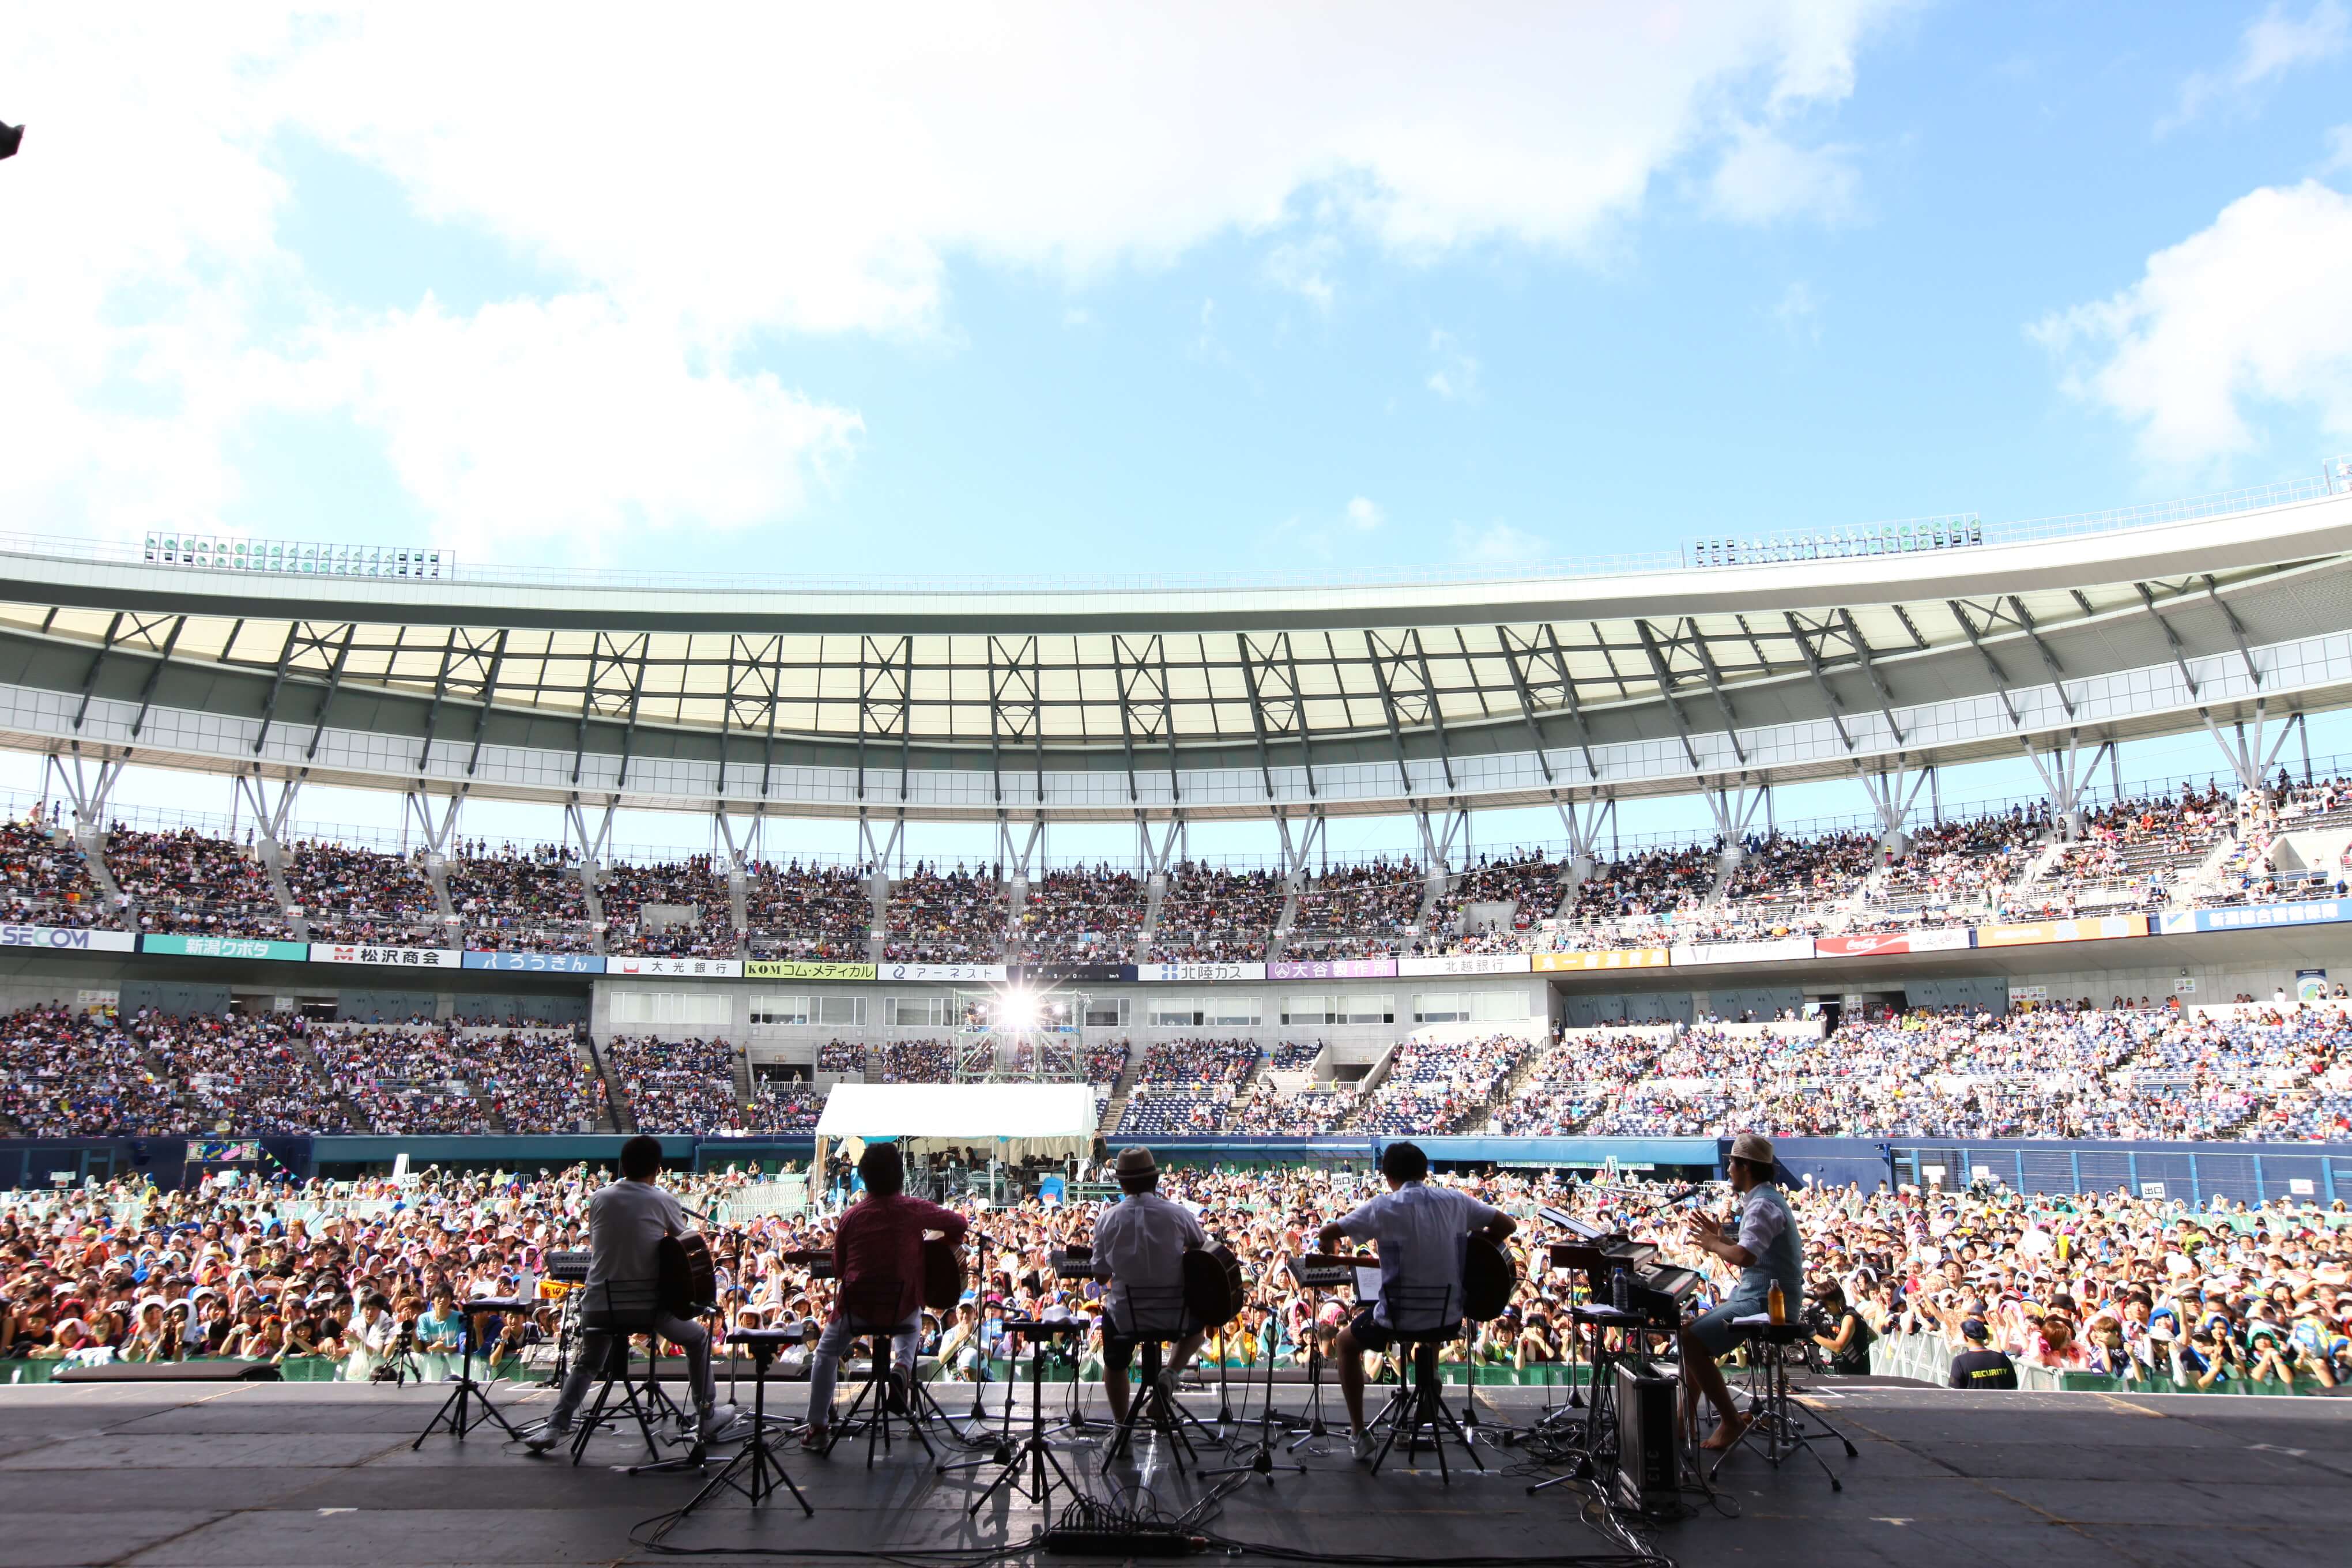 全国ツアー「明治安田生命Presents KAZUMASA ODA TOUR 2014 - 2015 本日 小田日和 開催 委員会バンドとして「音楽と髭達2015 Music Stadium」出演